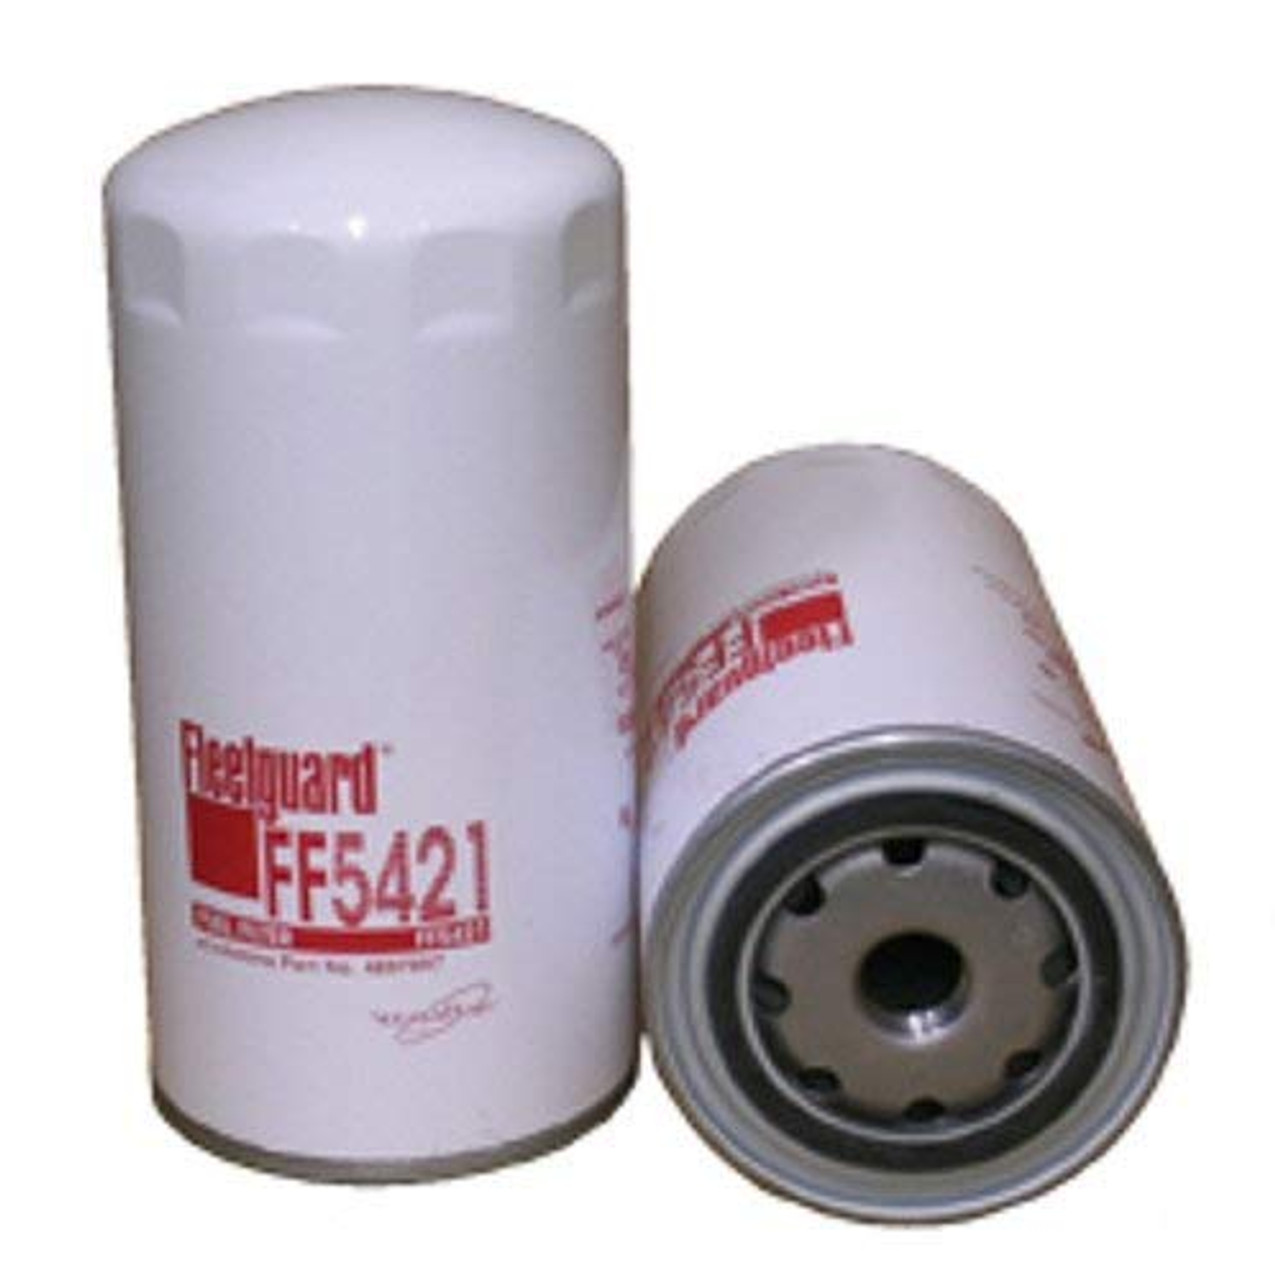 Fleetguard FF5421 Fuel Filter Spin-on